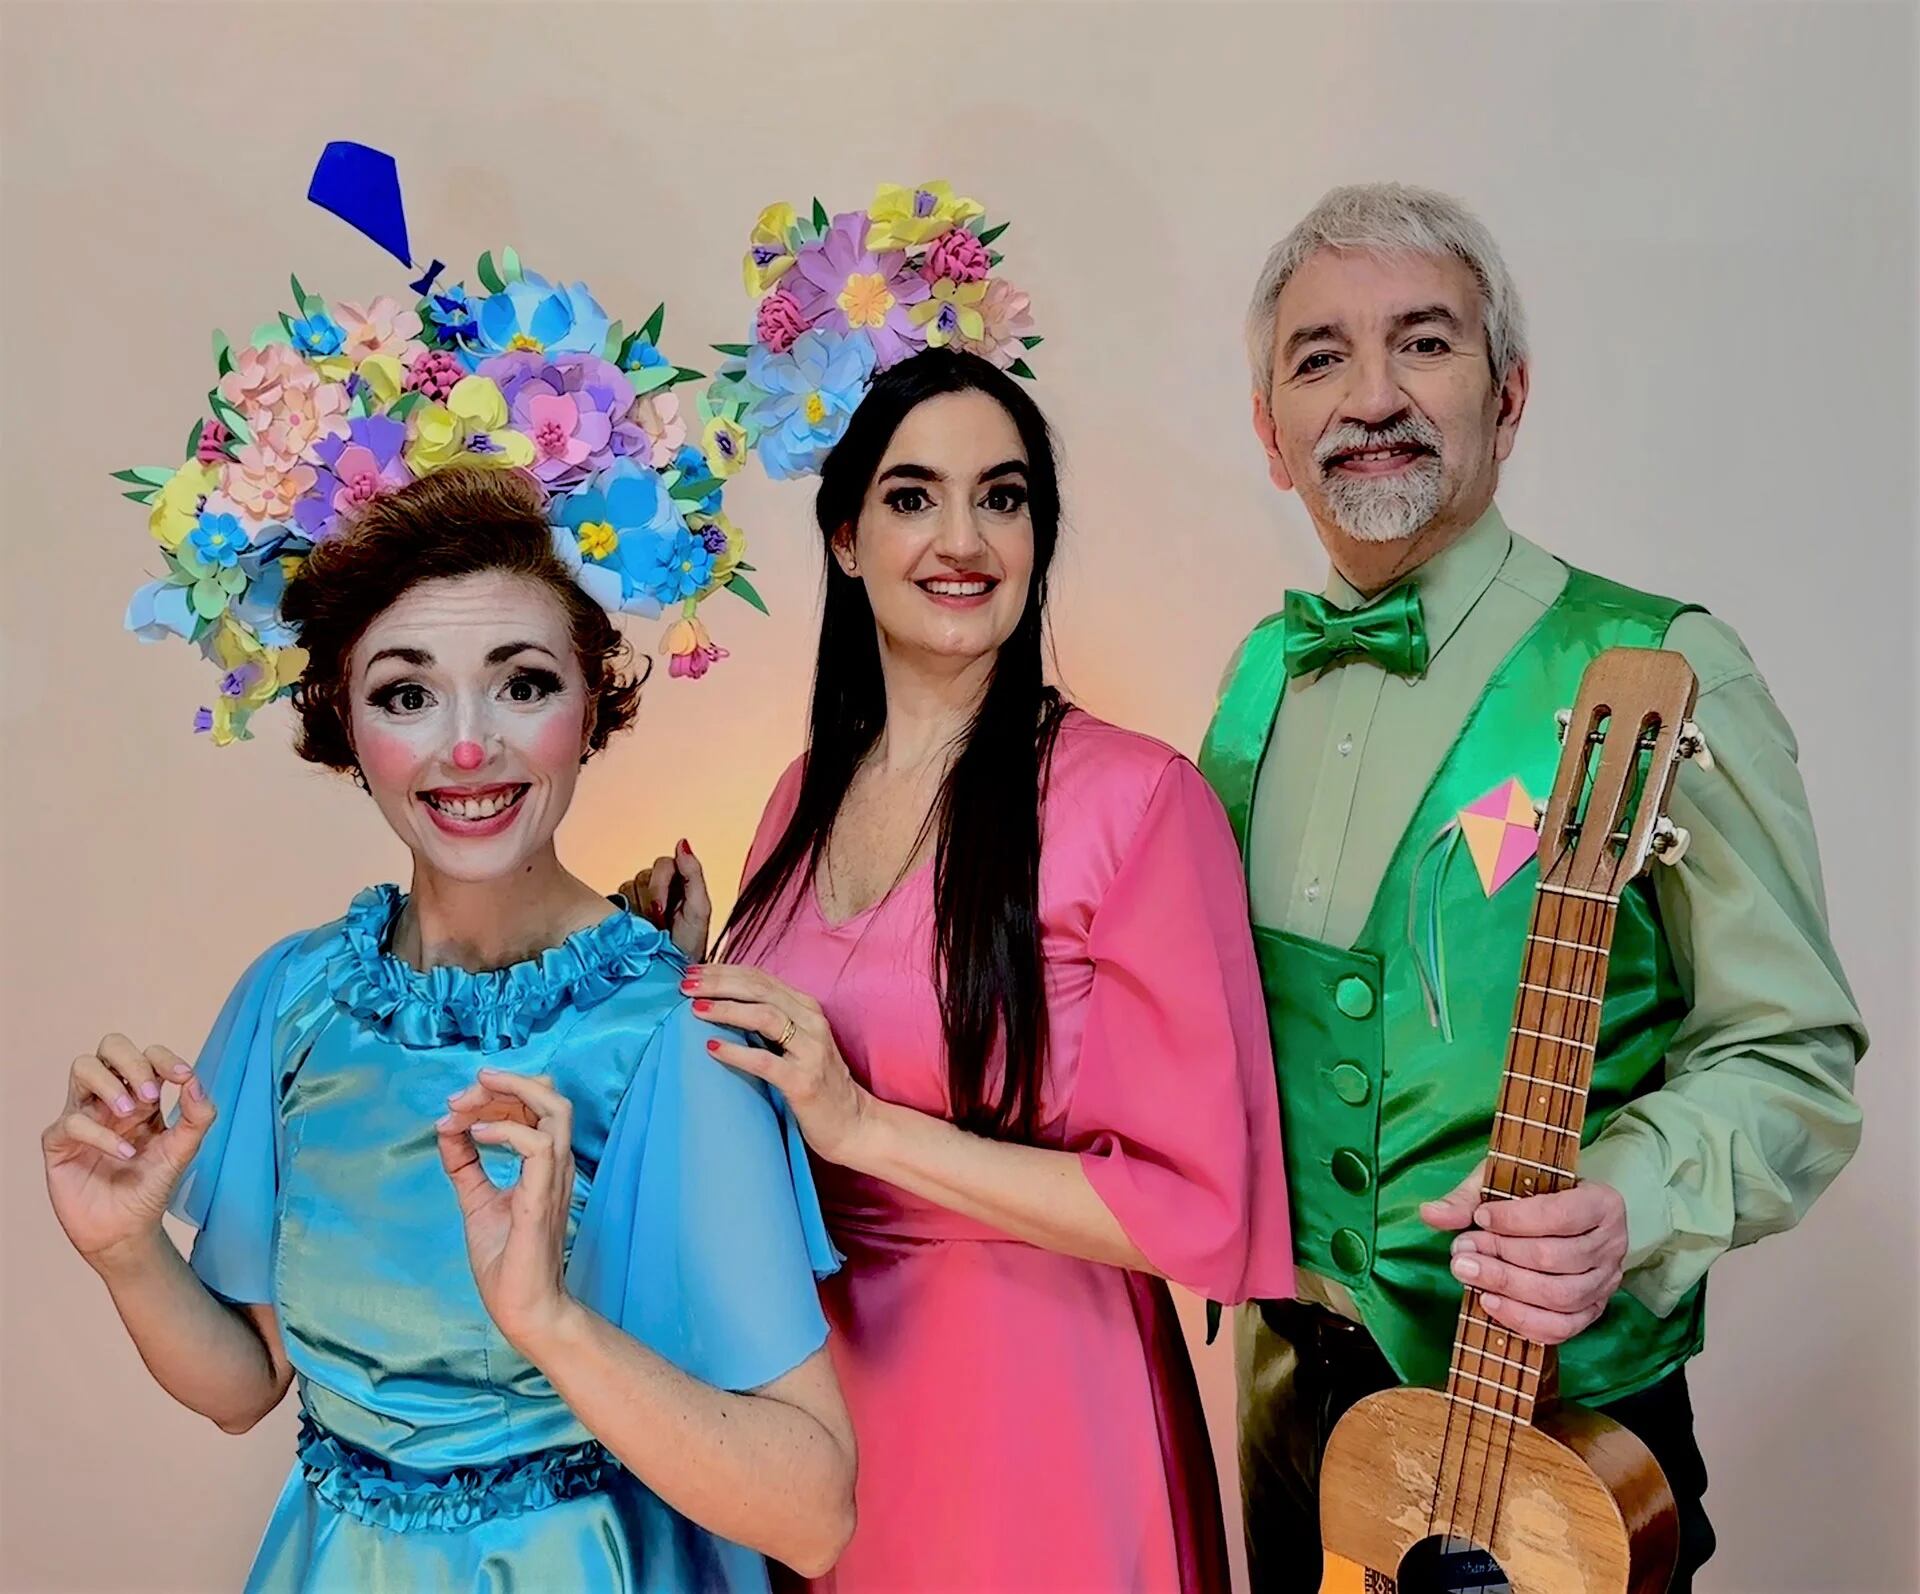 La orquesta nacional presenta Barriletes y Flores, de Mercedes García Blesa, un concierto para las infancias